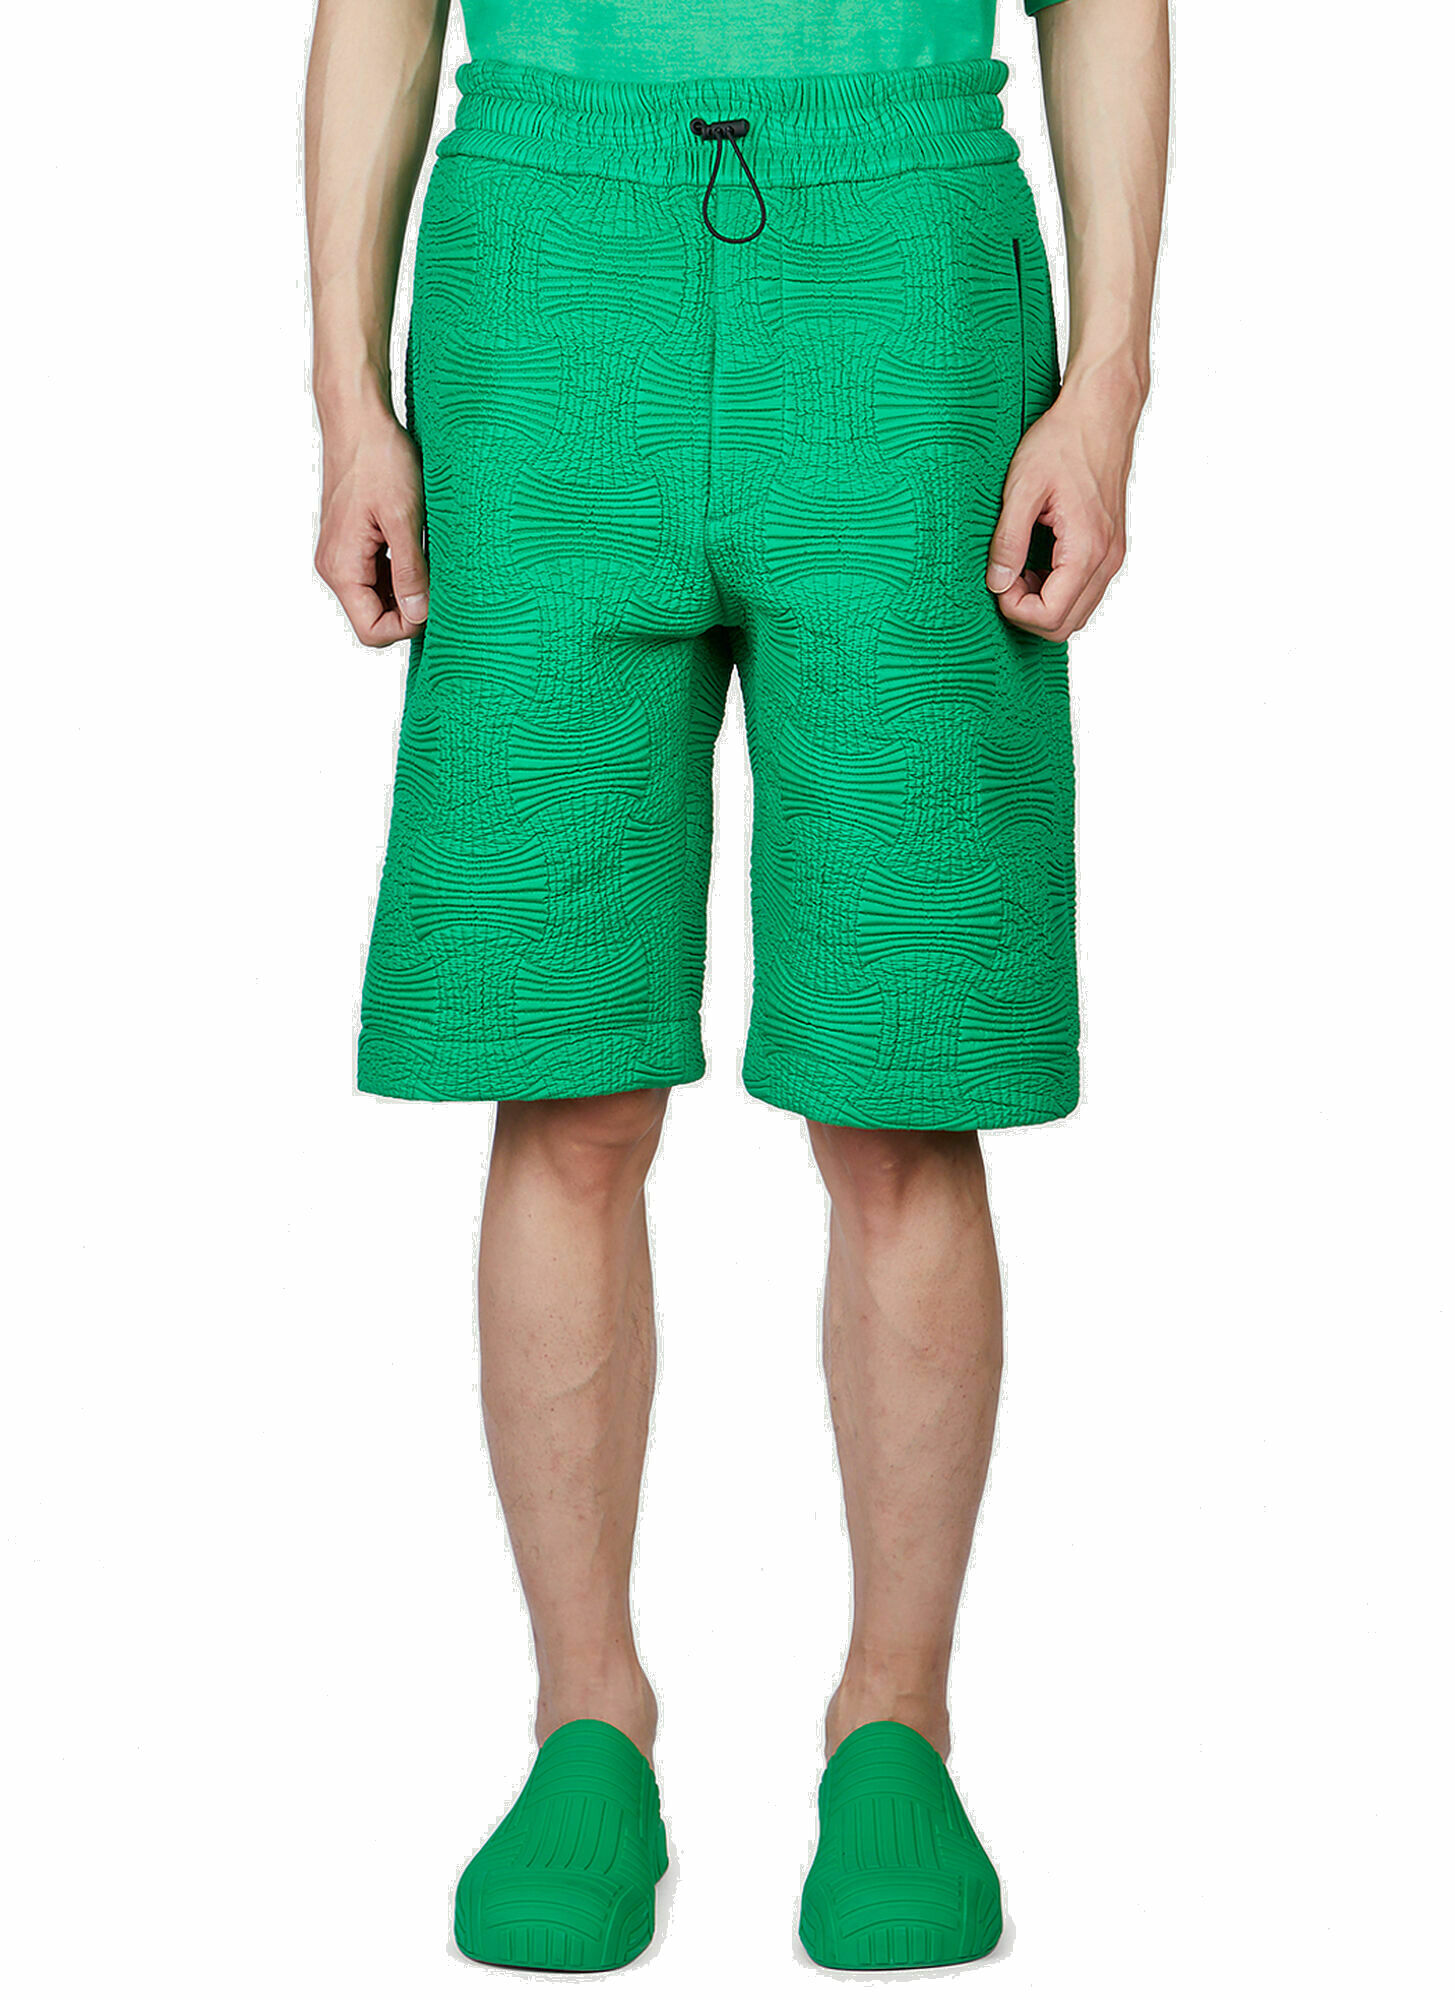 Photo: Intreccio Shorts in Green